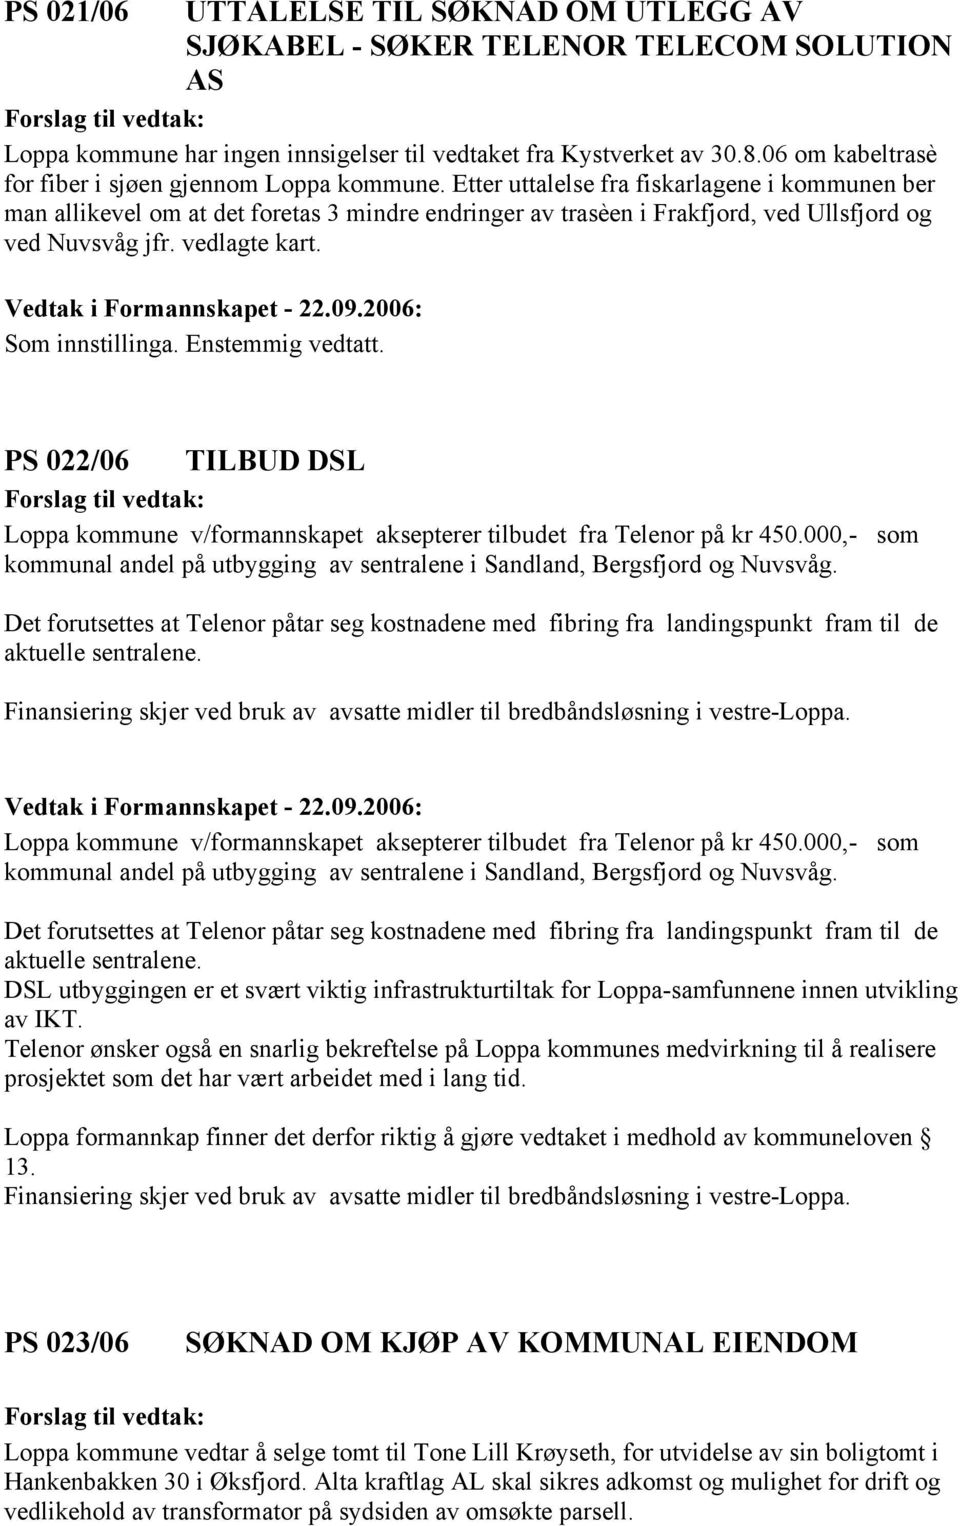 Etter uttalelse fra fiskarlagene i kommunen ber man allikevel om at det foretas 3 mindre endringer av trasèen i Frakfjord, ved Ullsfjord og ved Nuvsvåg jfr. vedlagte kart.